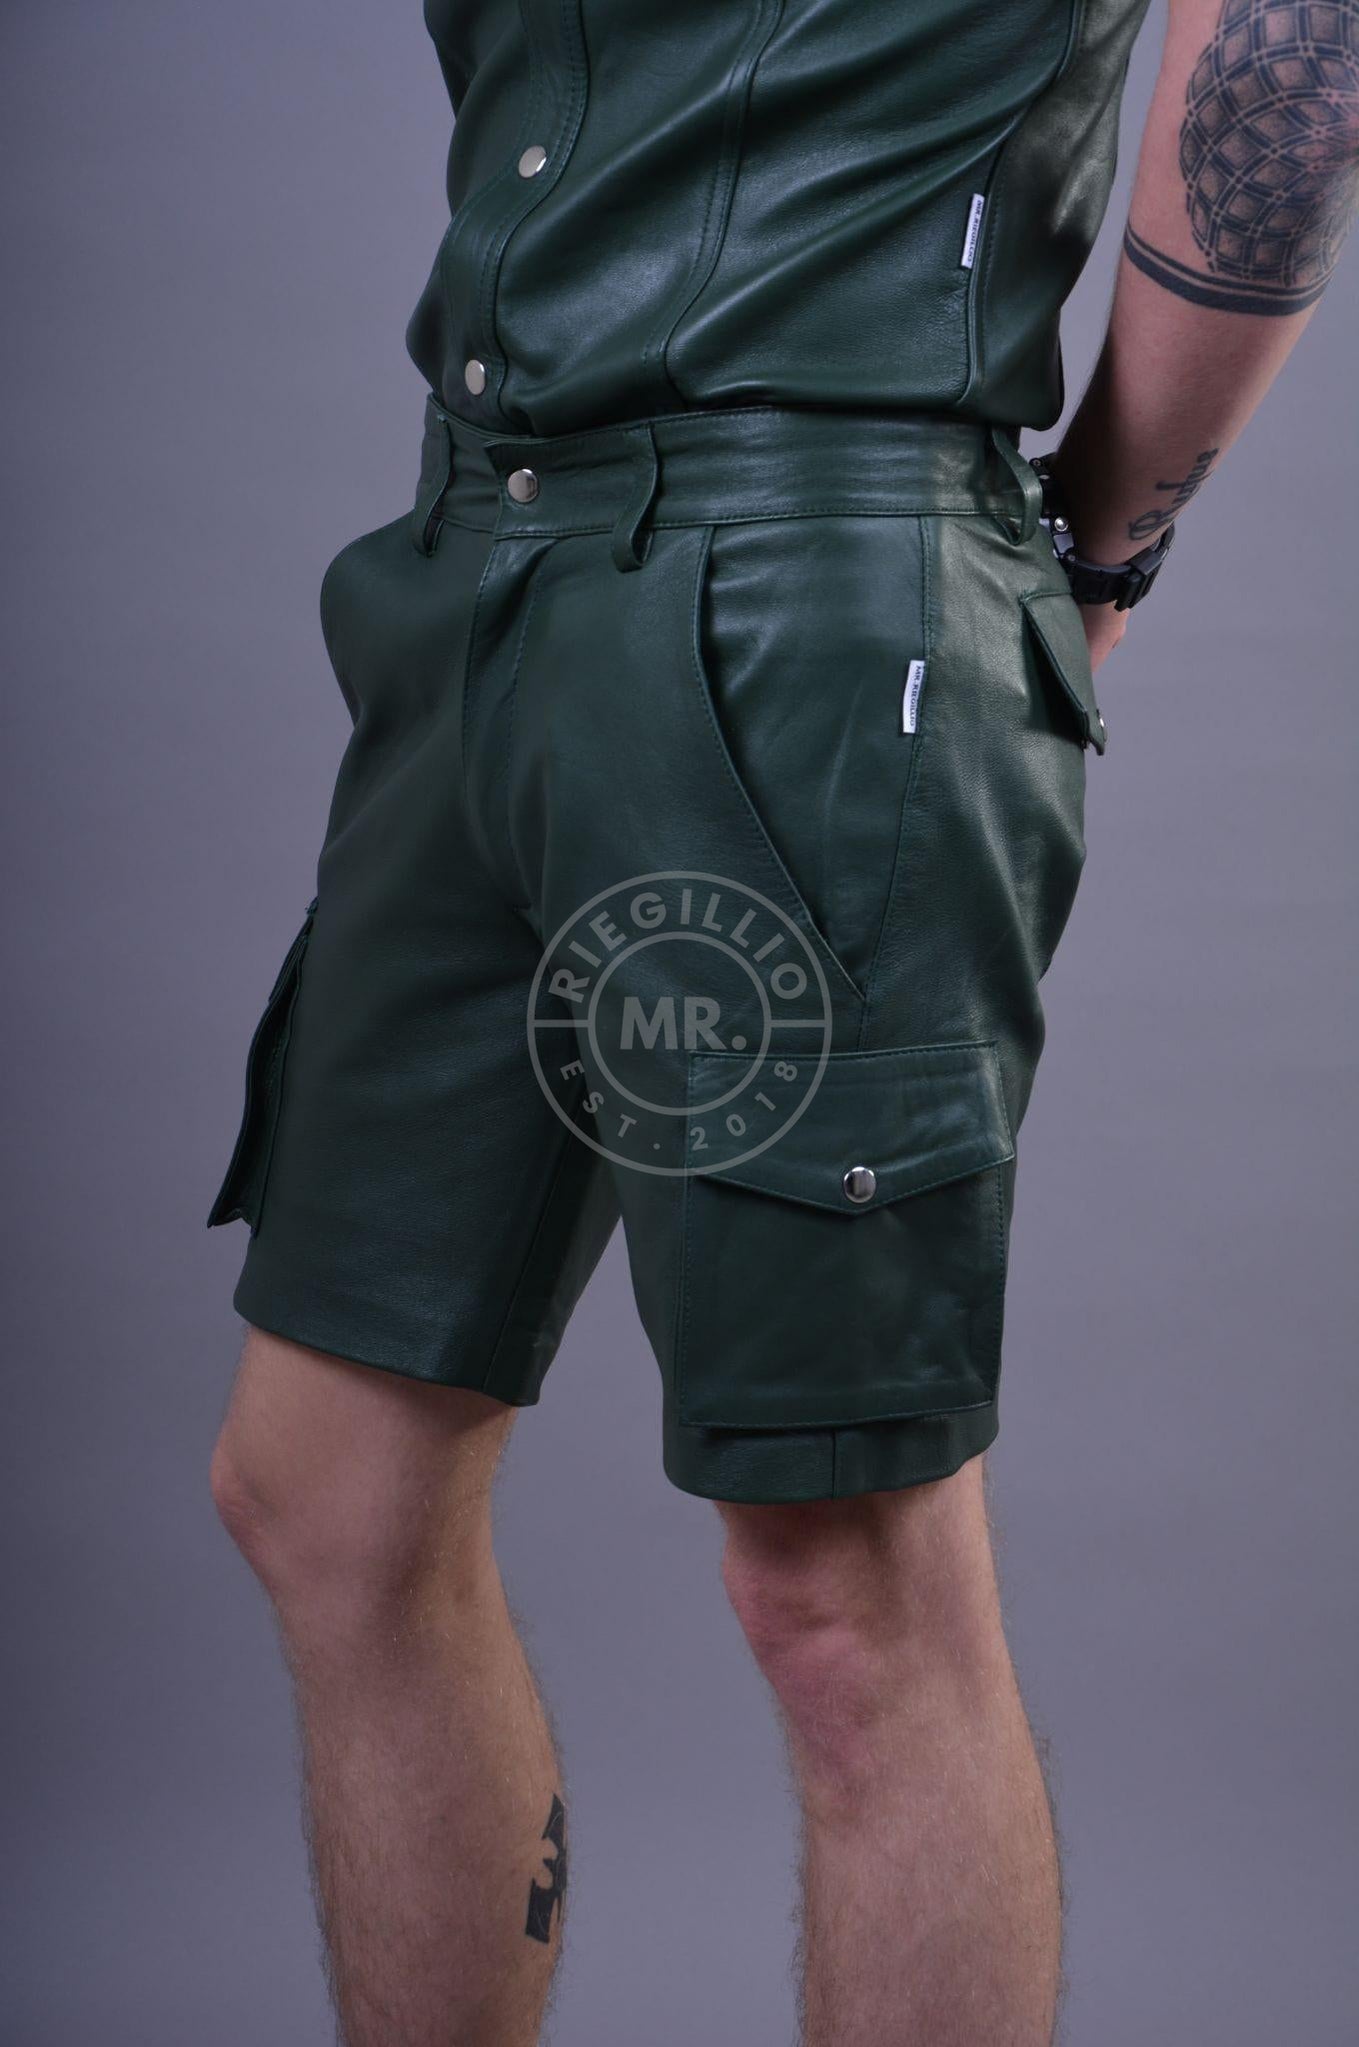 Dark Green Leather Cargo Short at MR. Riegillio